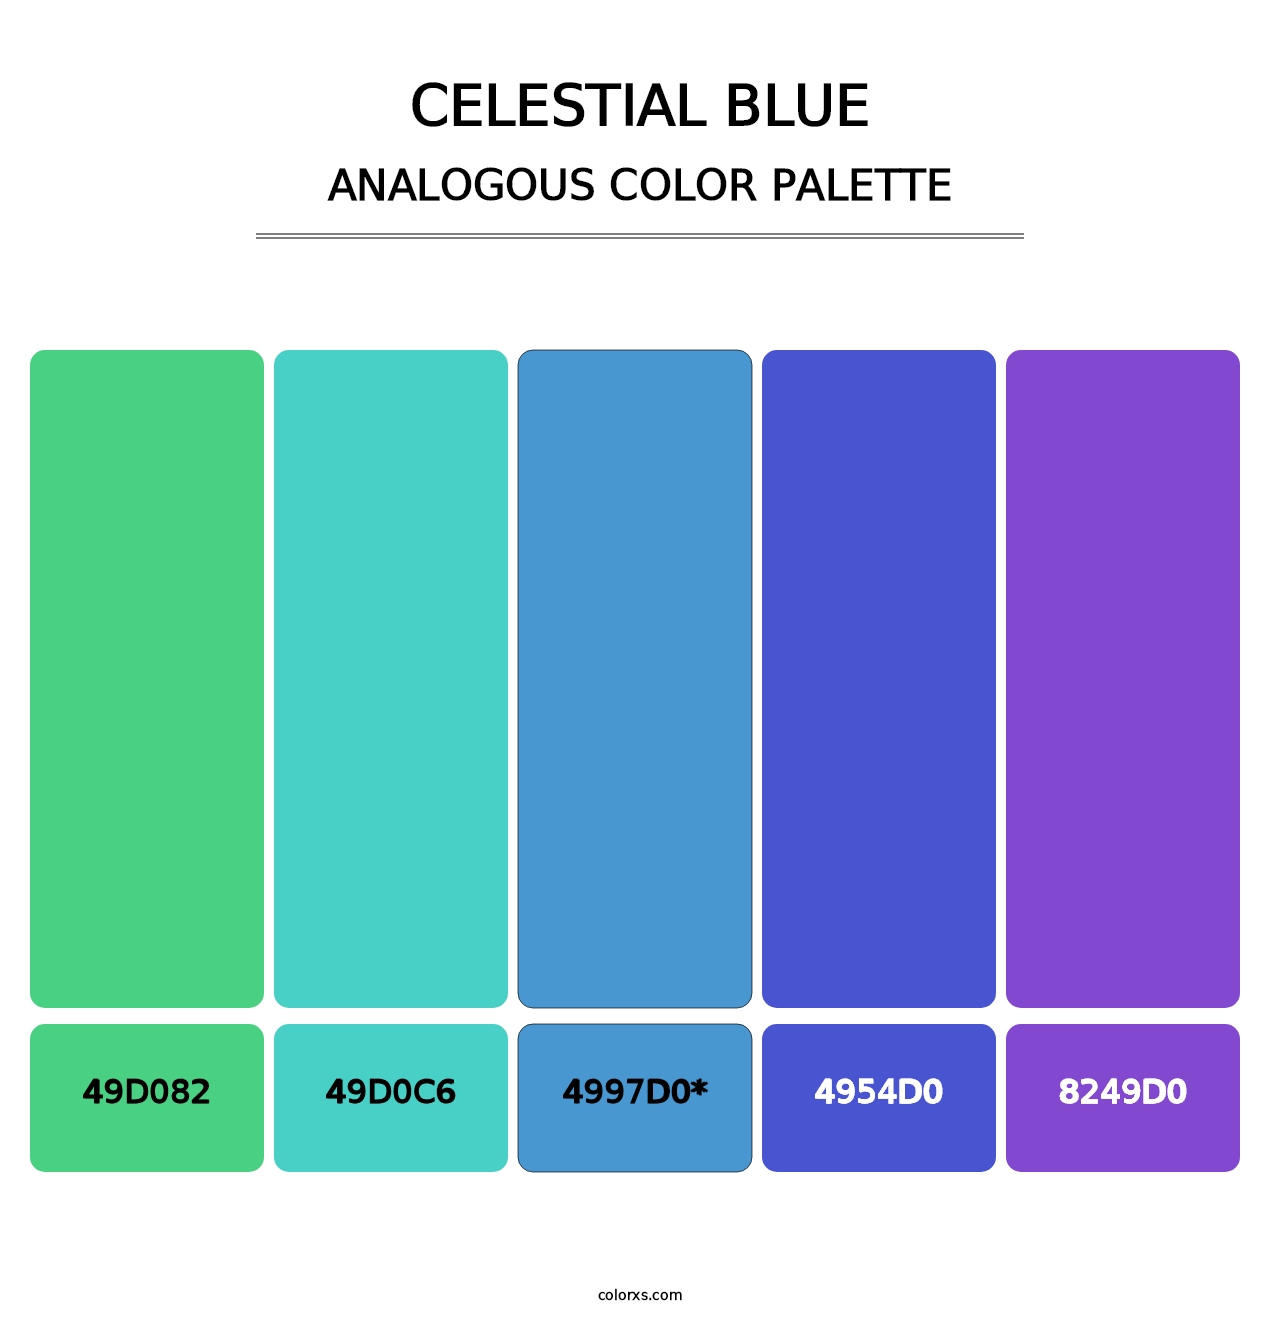 Celestial Blue - Analogous Color Palette